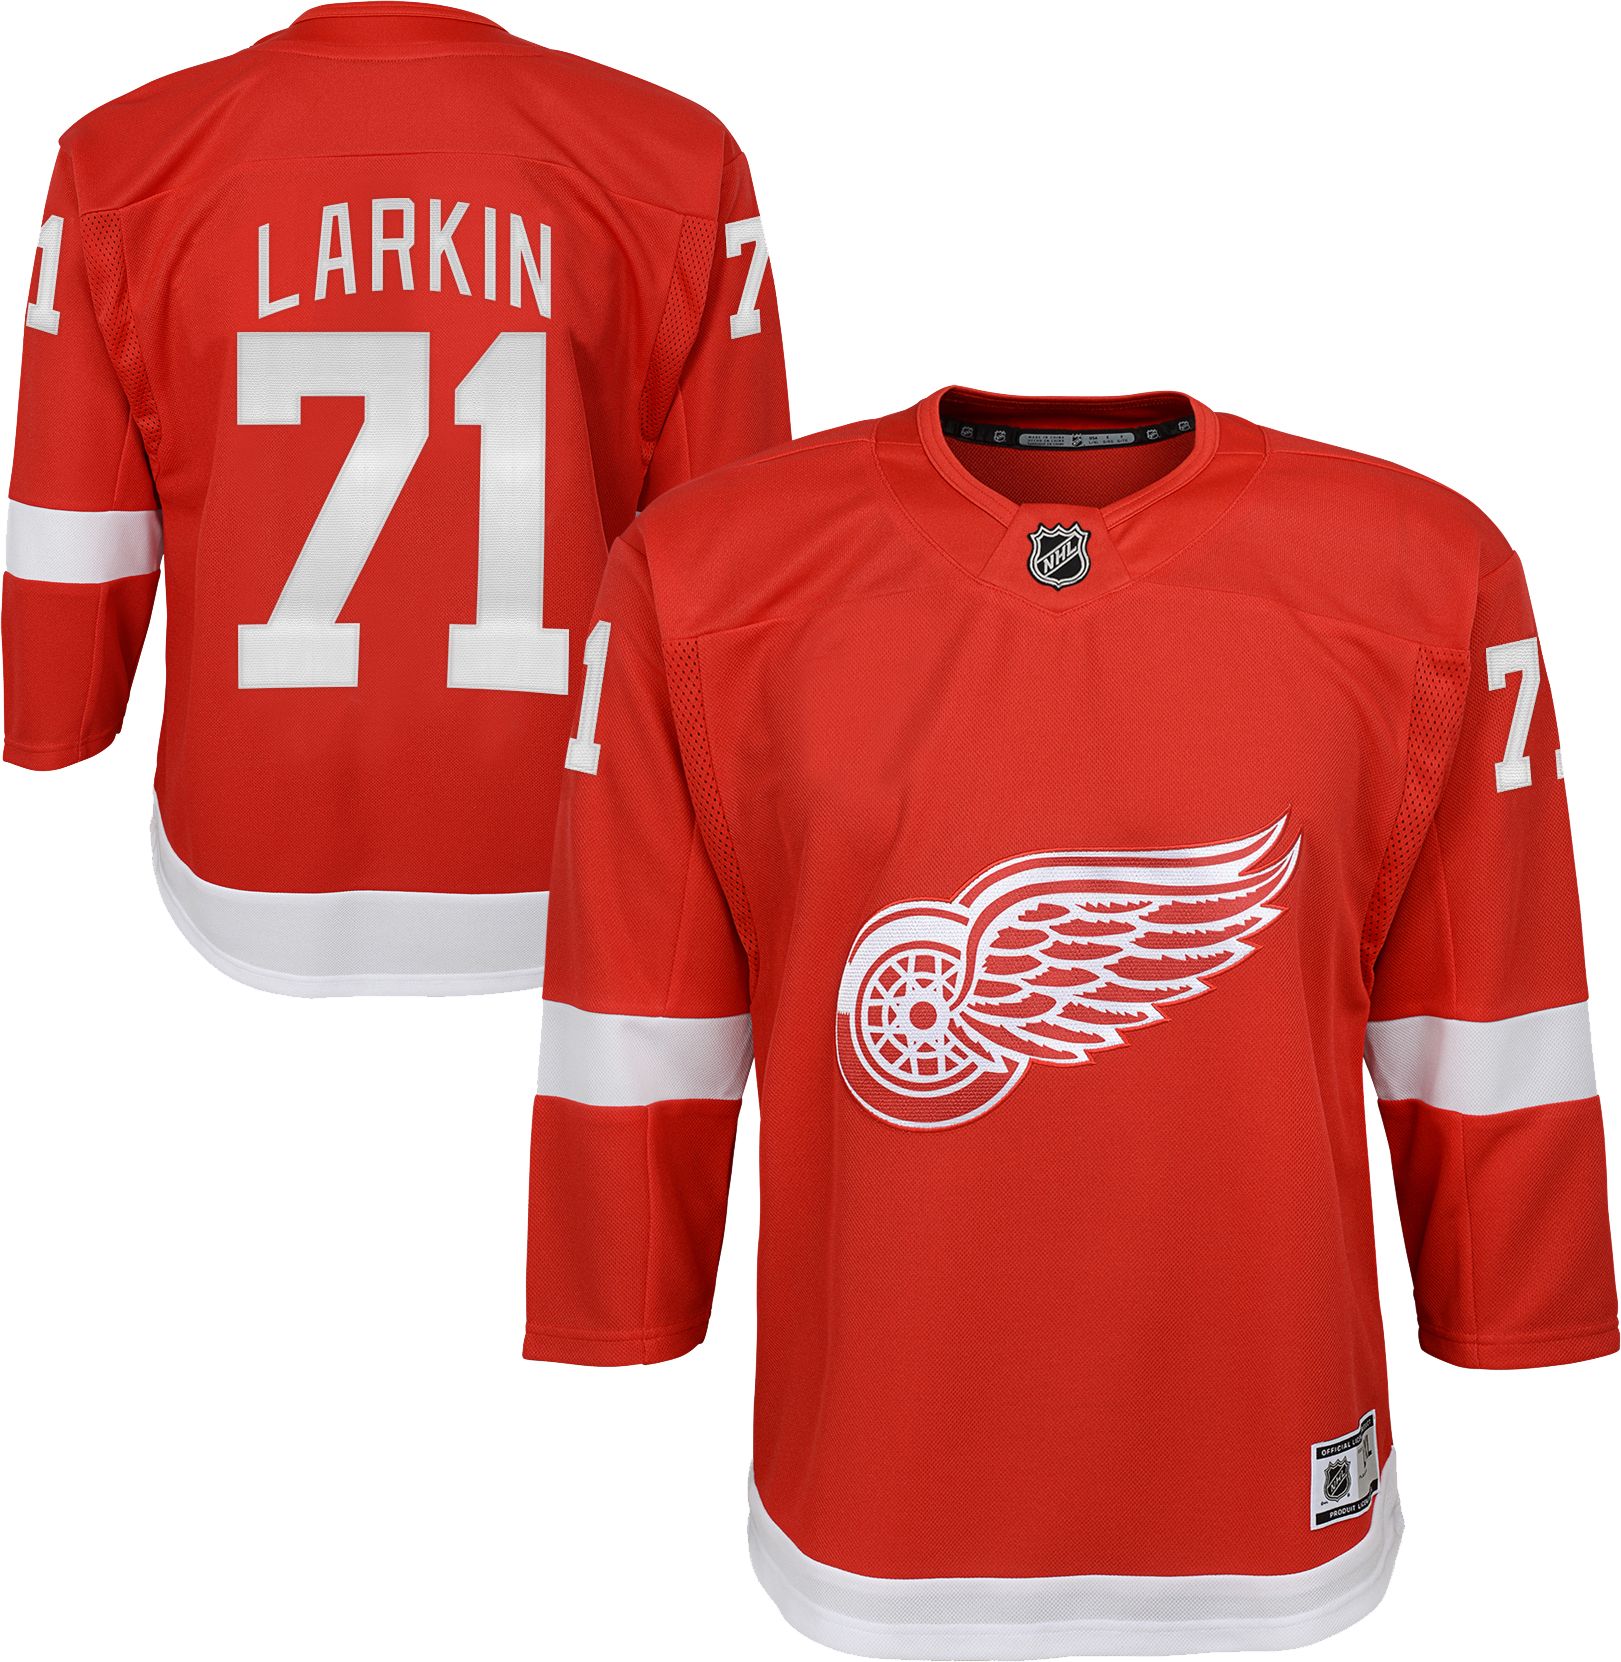 فرن غاز سطحي Detroit Red Wings Larkin Shirt Online Sales, UP TO 58% OFF | www ... فرن غاز سطحي